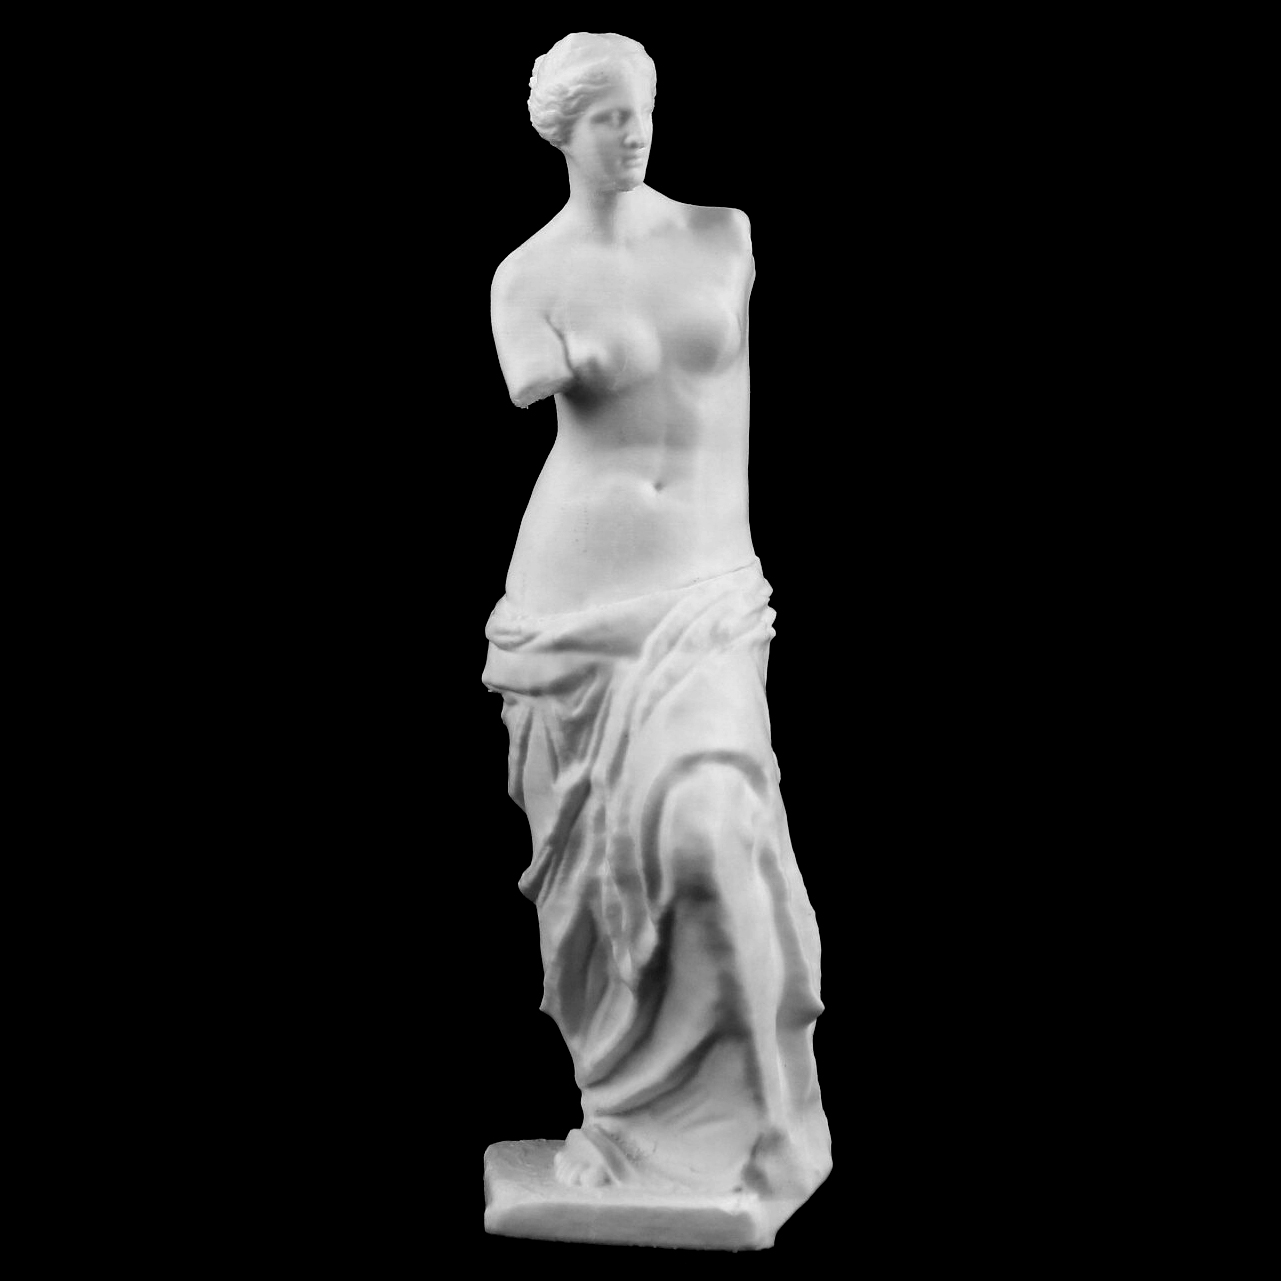 Venus de Milo at The Louvre, Paris